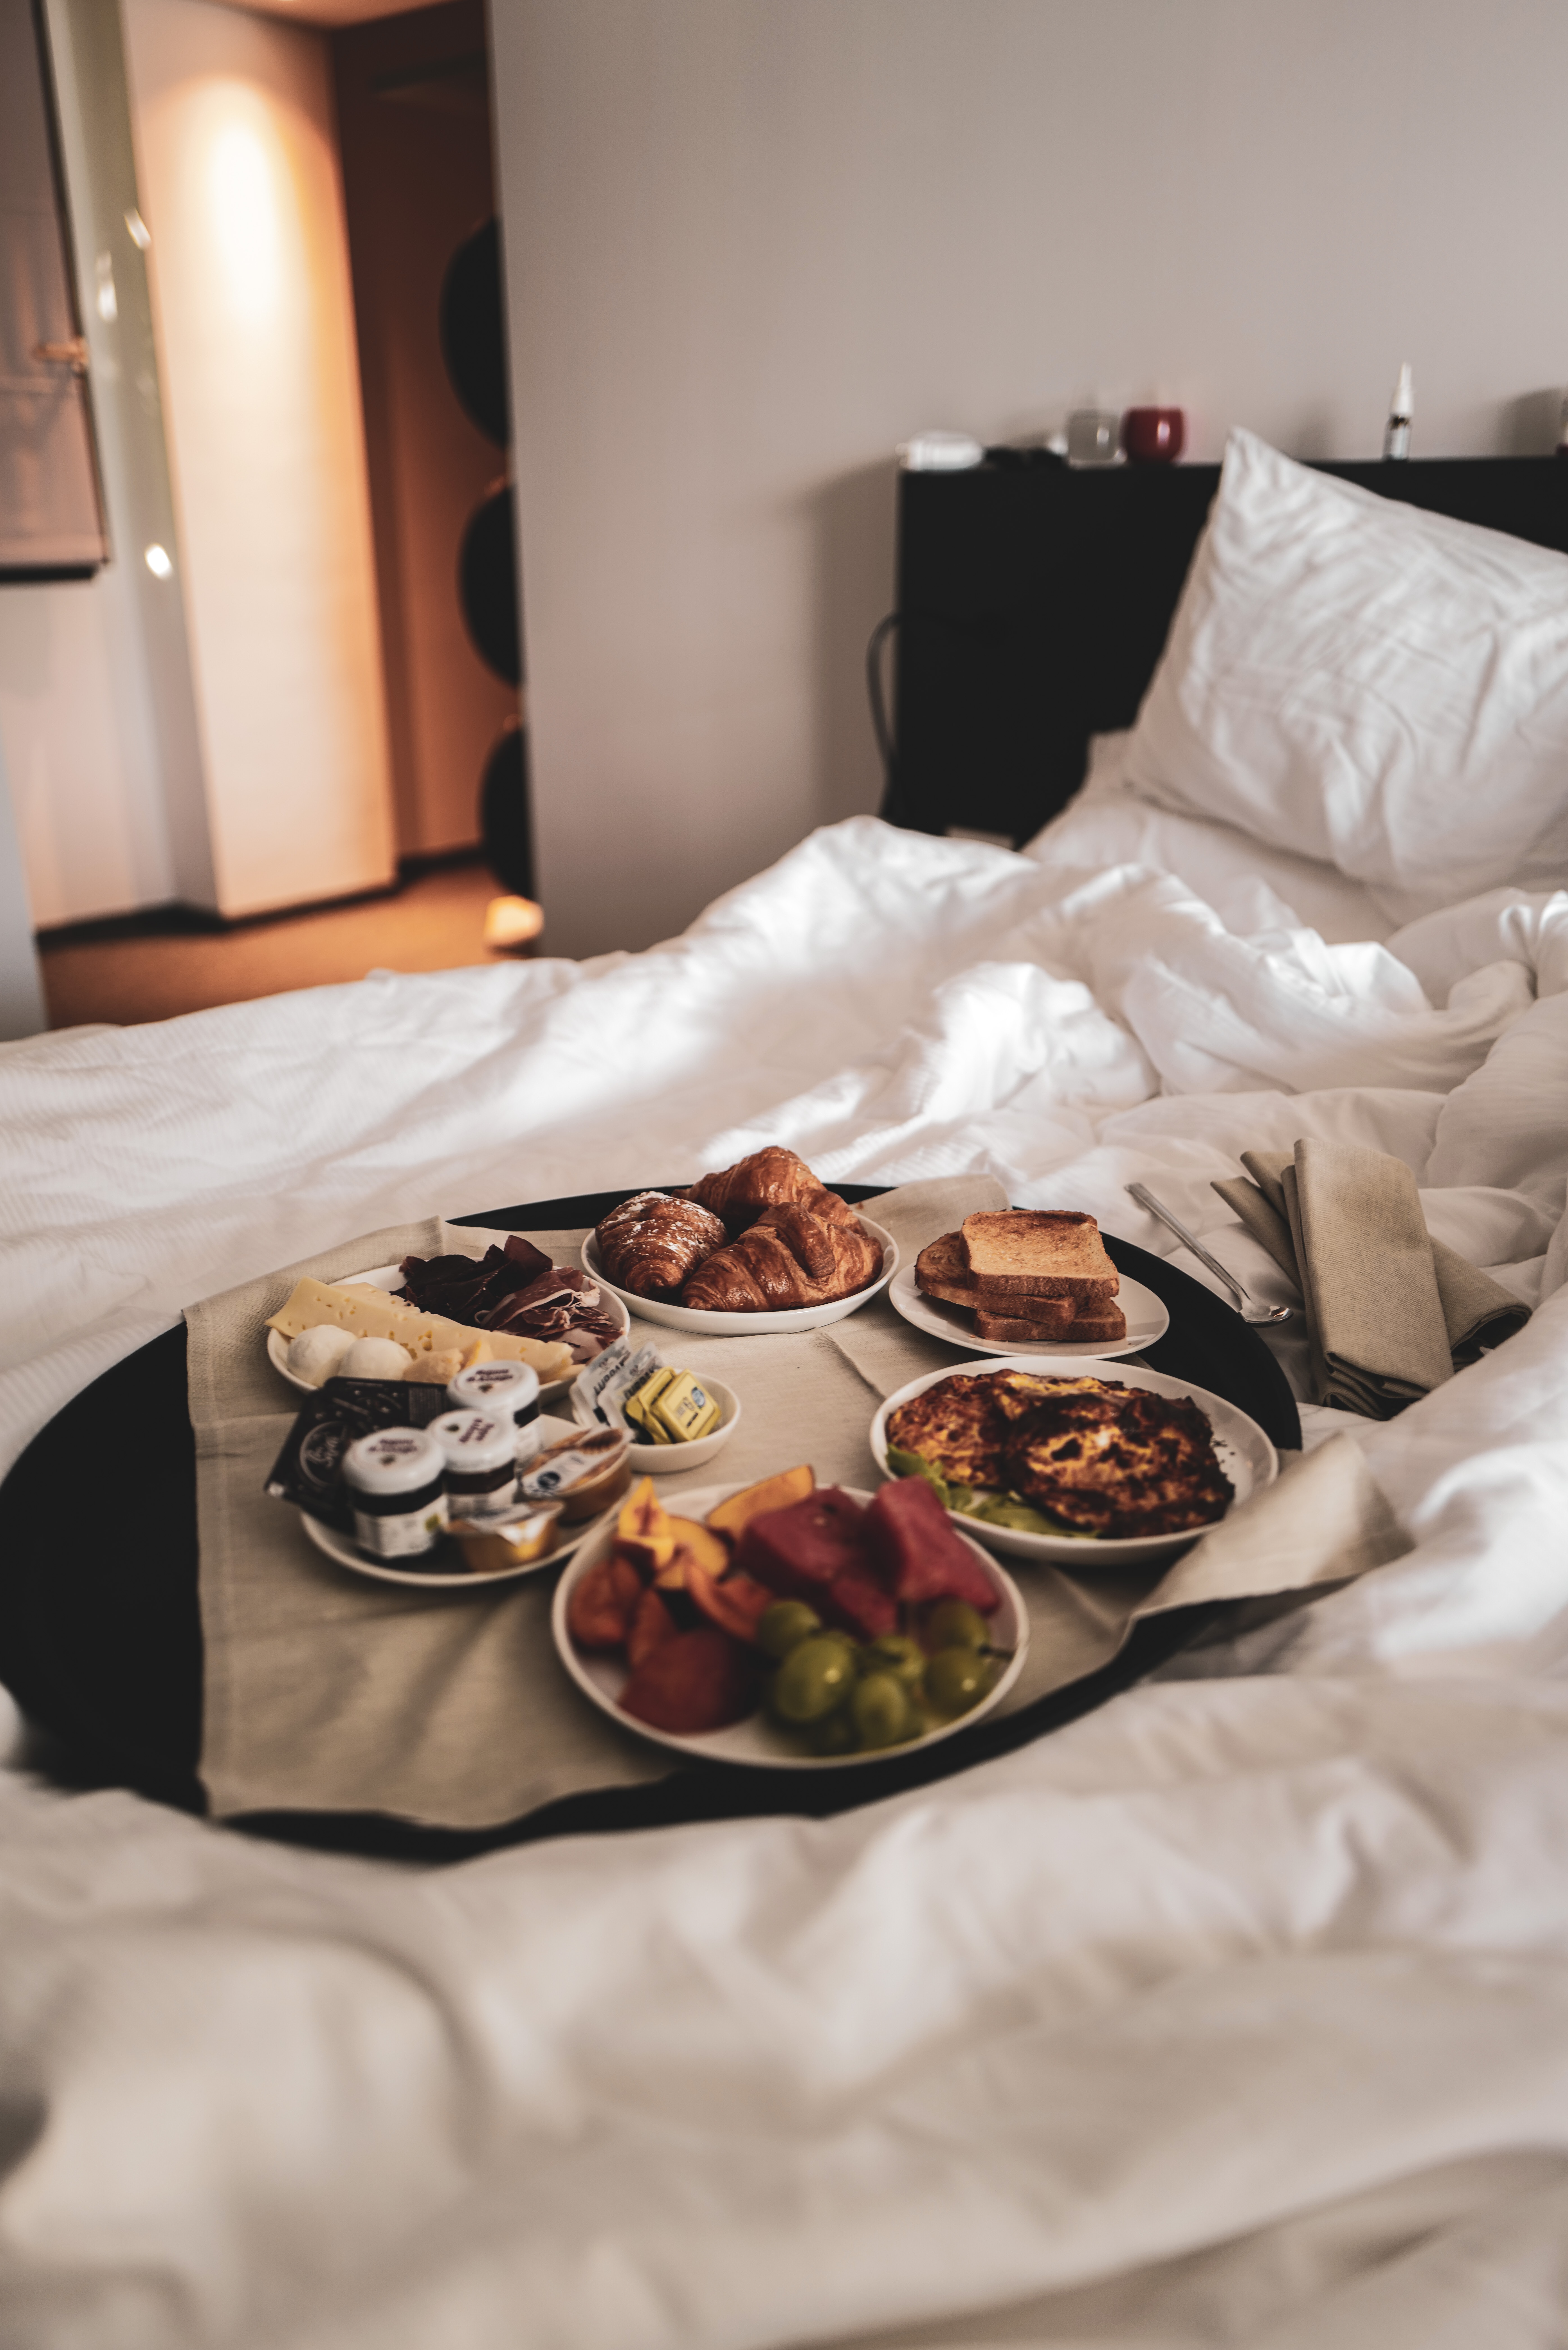 Speisen auf 6 Tellern auf einem Bett im Hotelzimmer